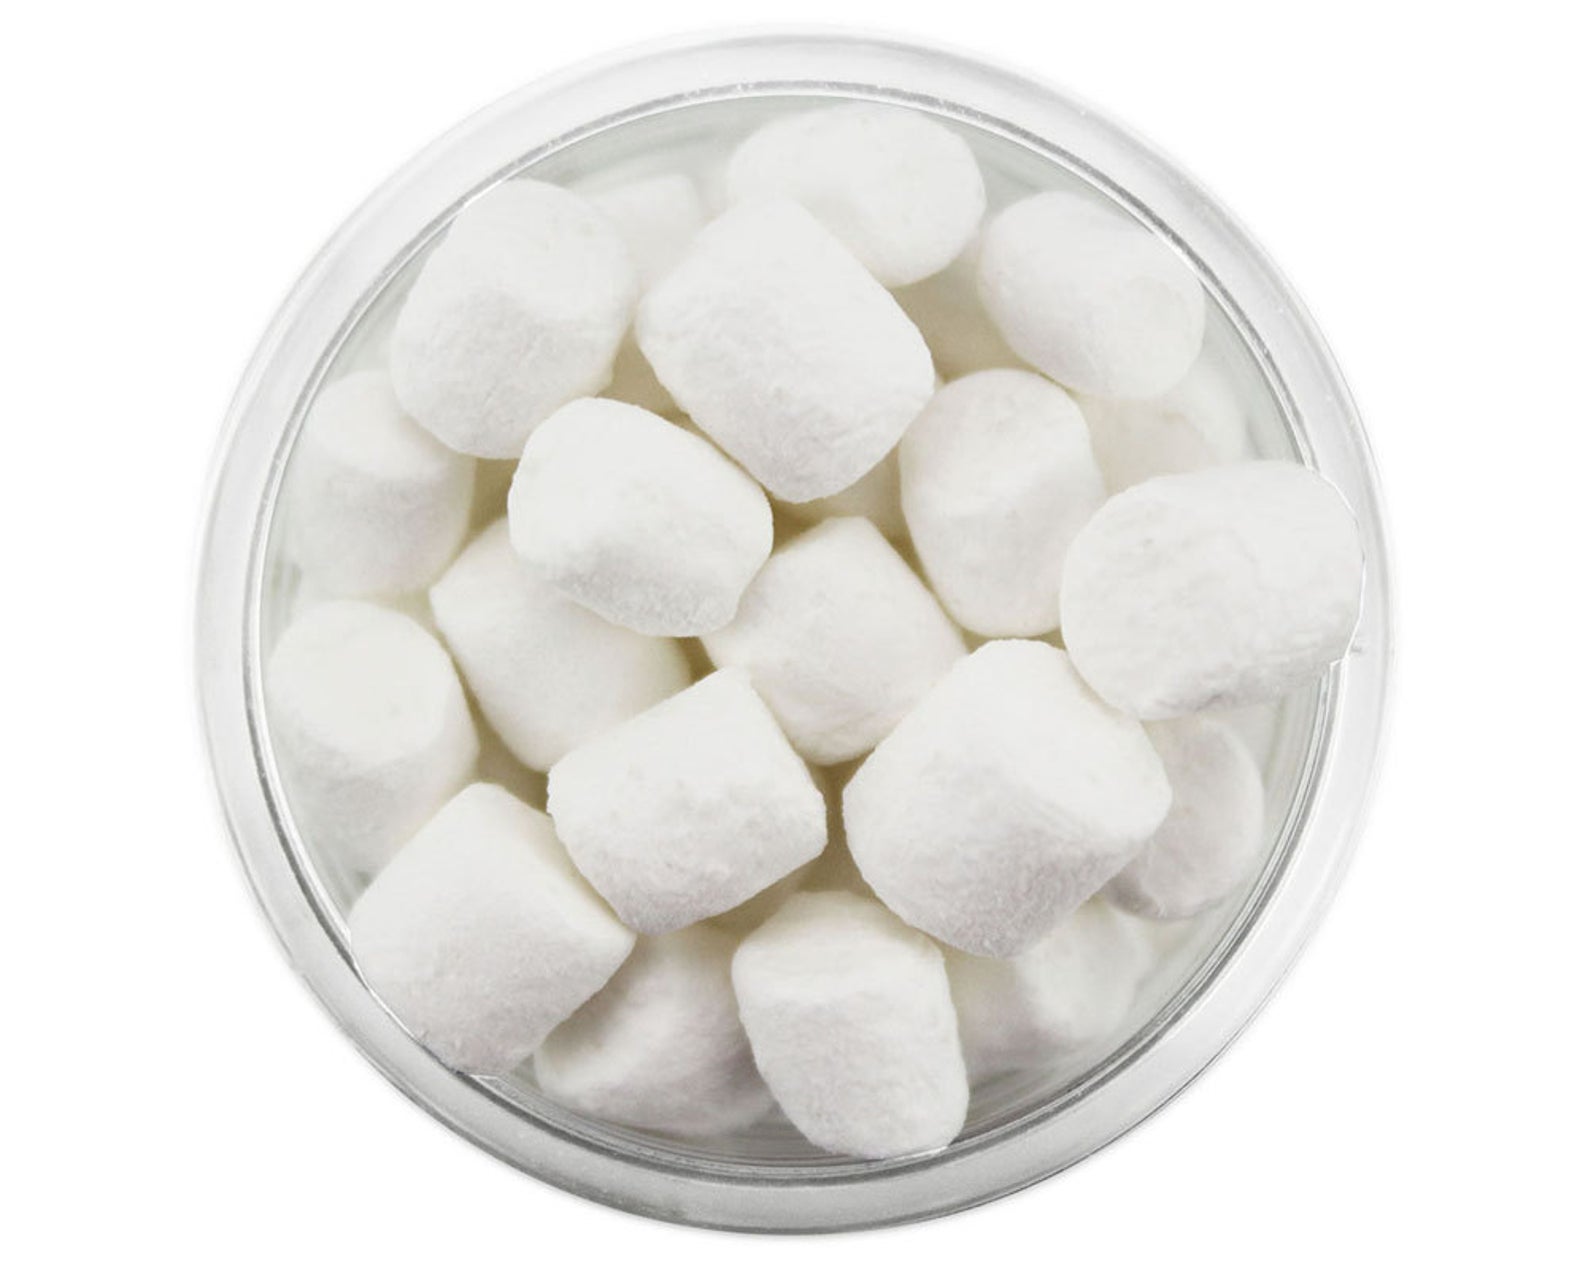 Tiny White Marshmallows